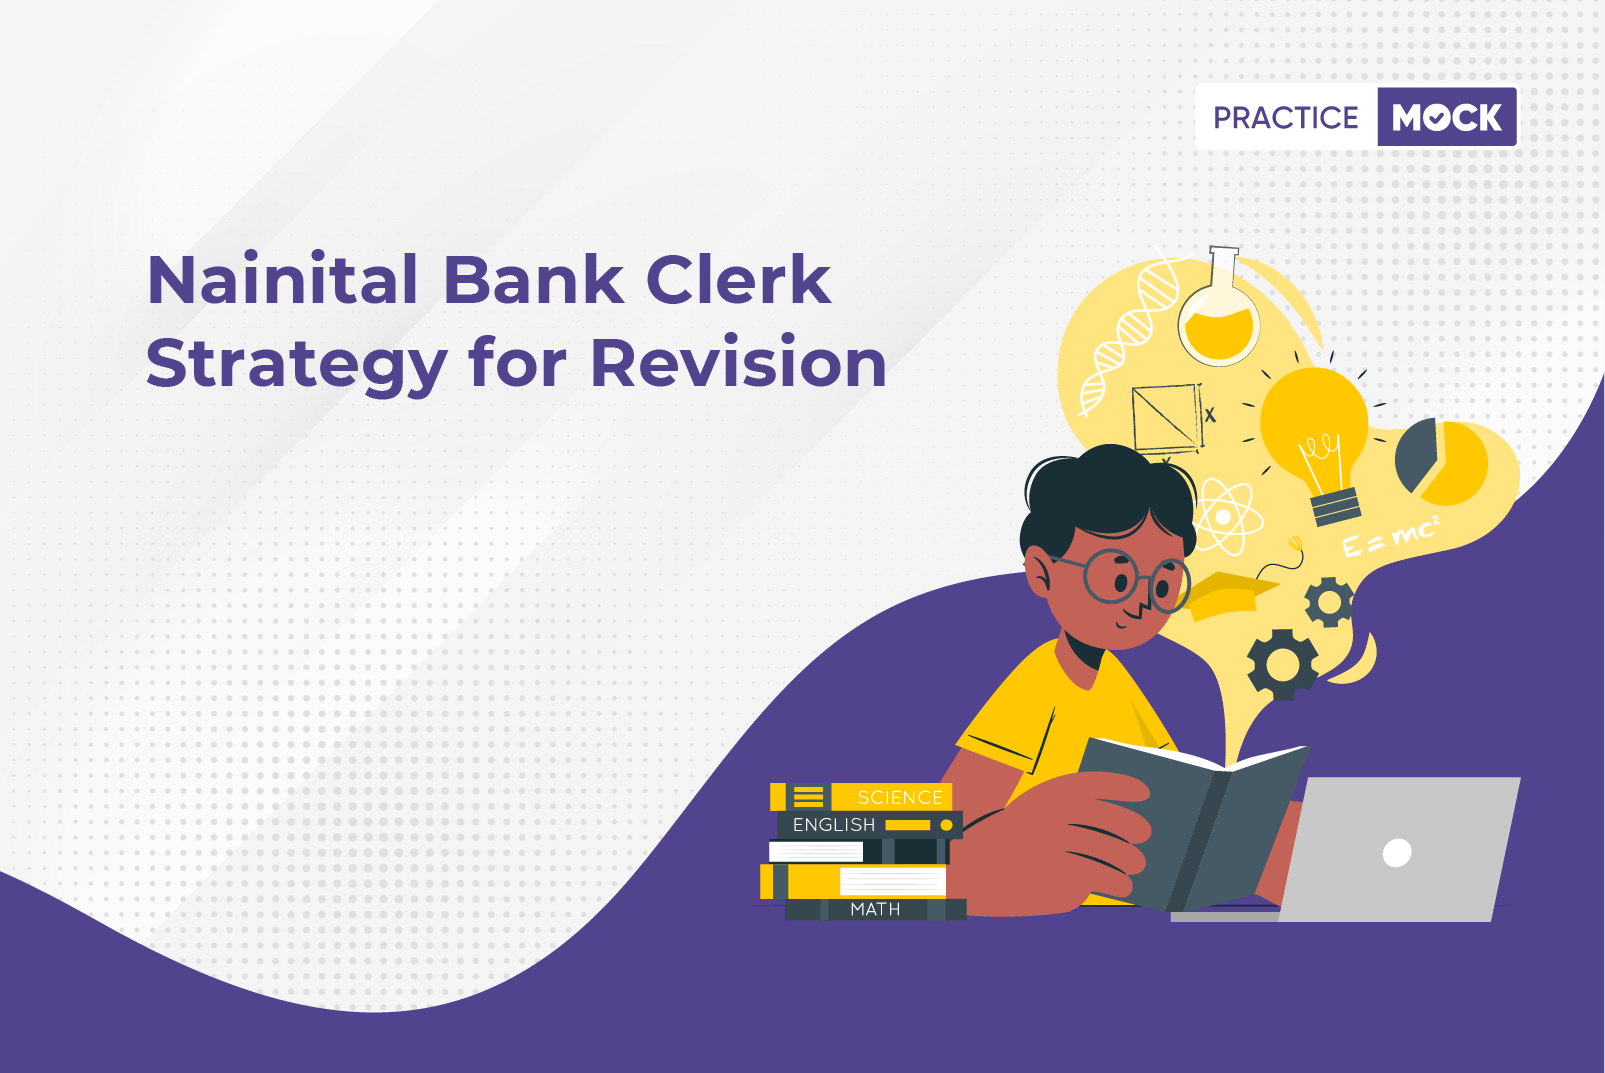 Nainital Bank Clerk Strategy for Revision